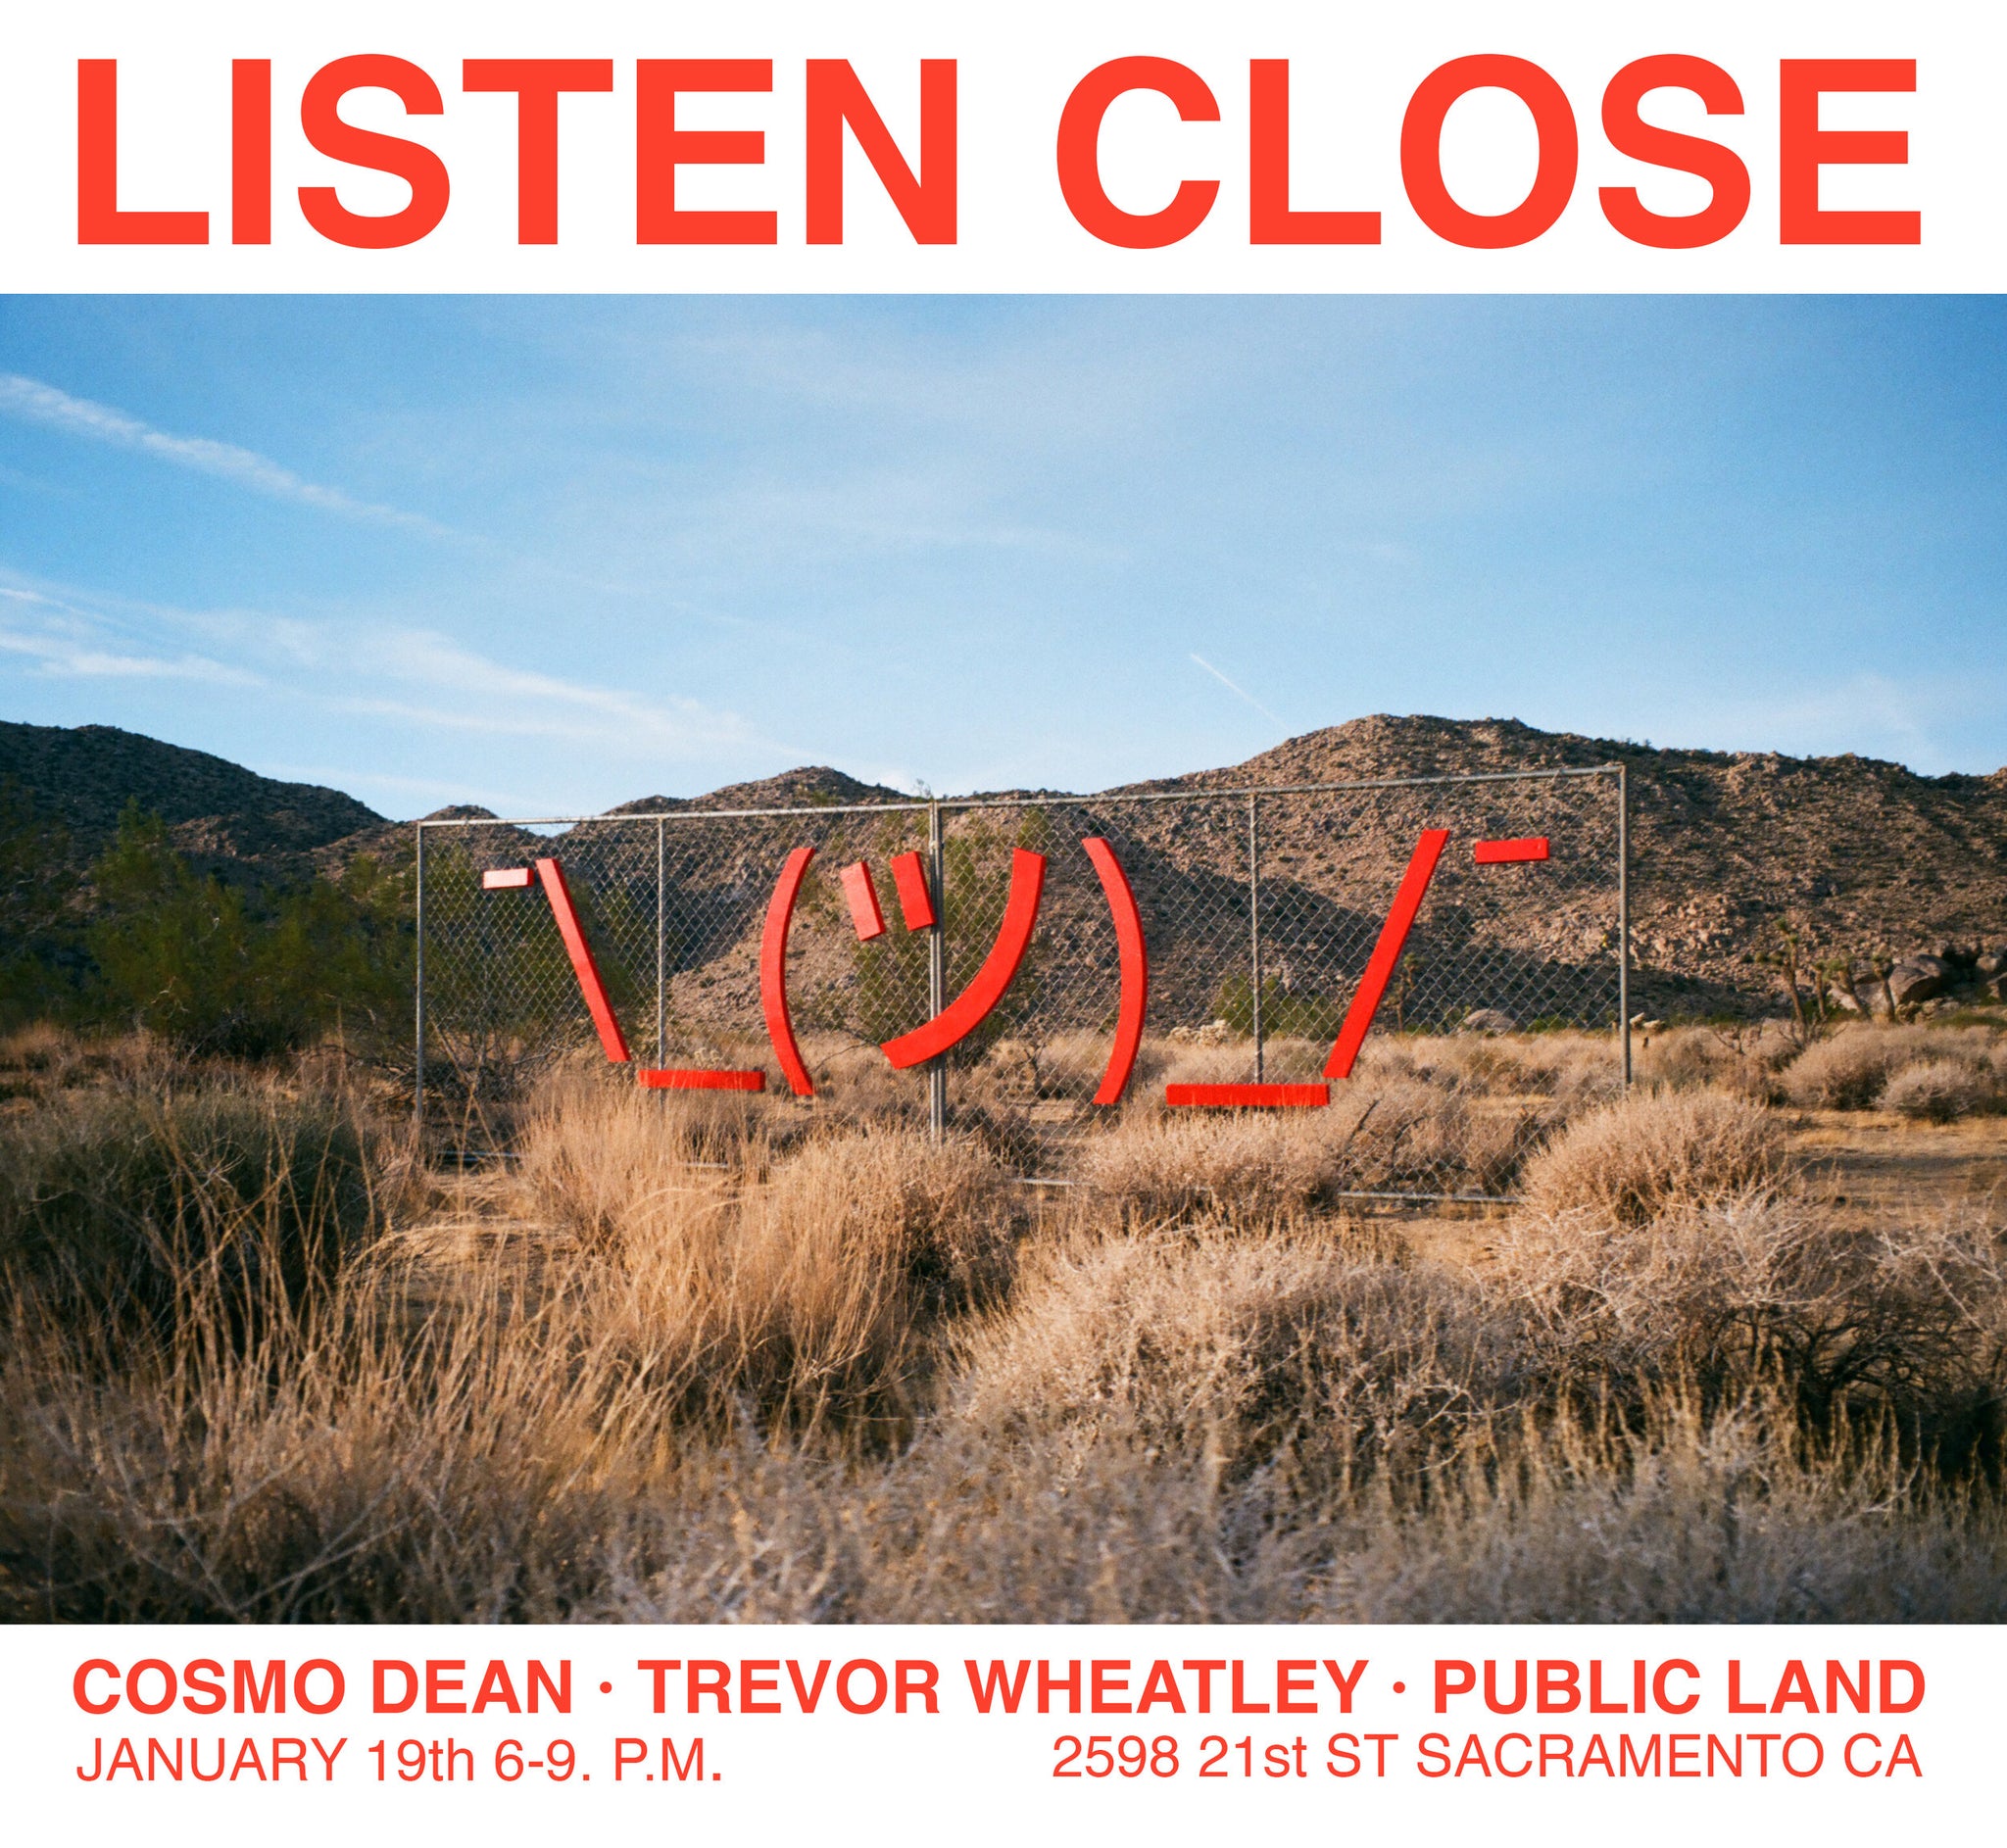 Trevor Wheatley + Cosmo Dean's "Listen Close" @ Public Land